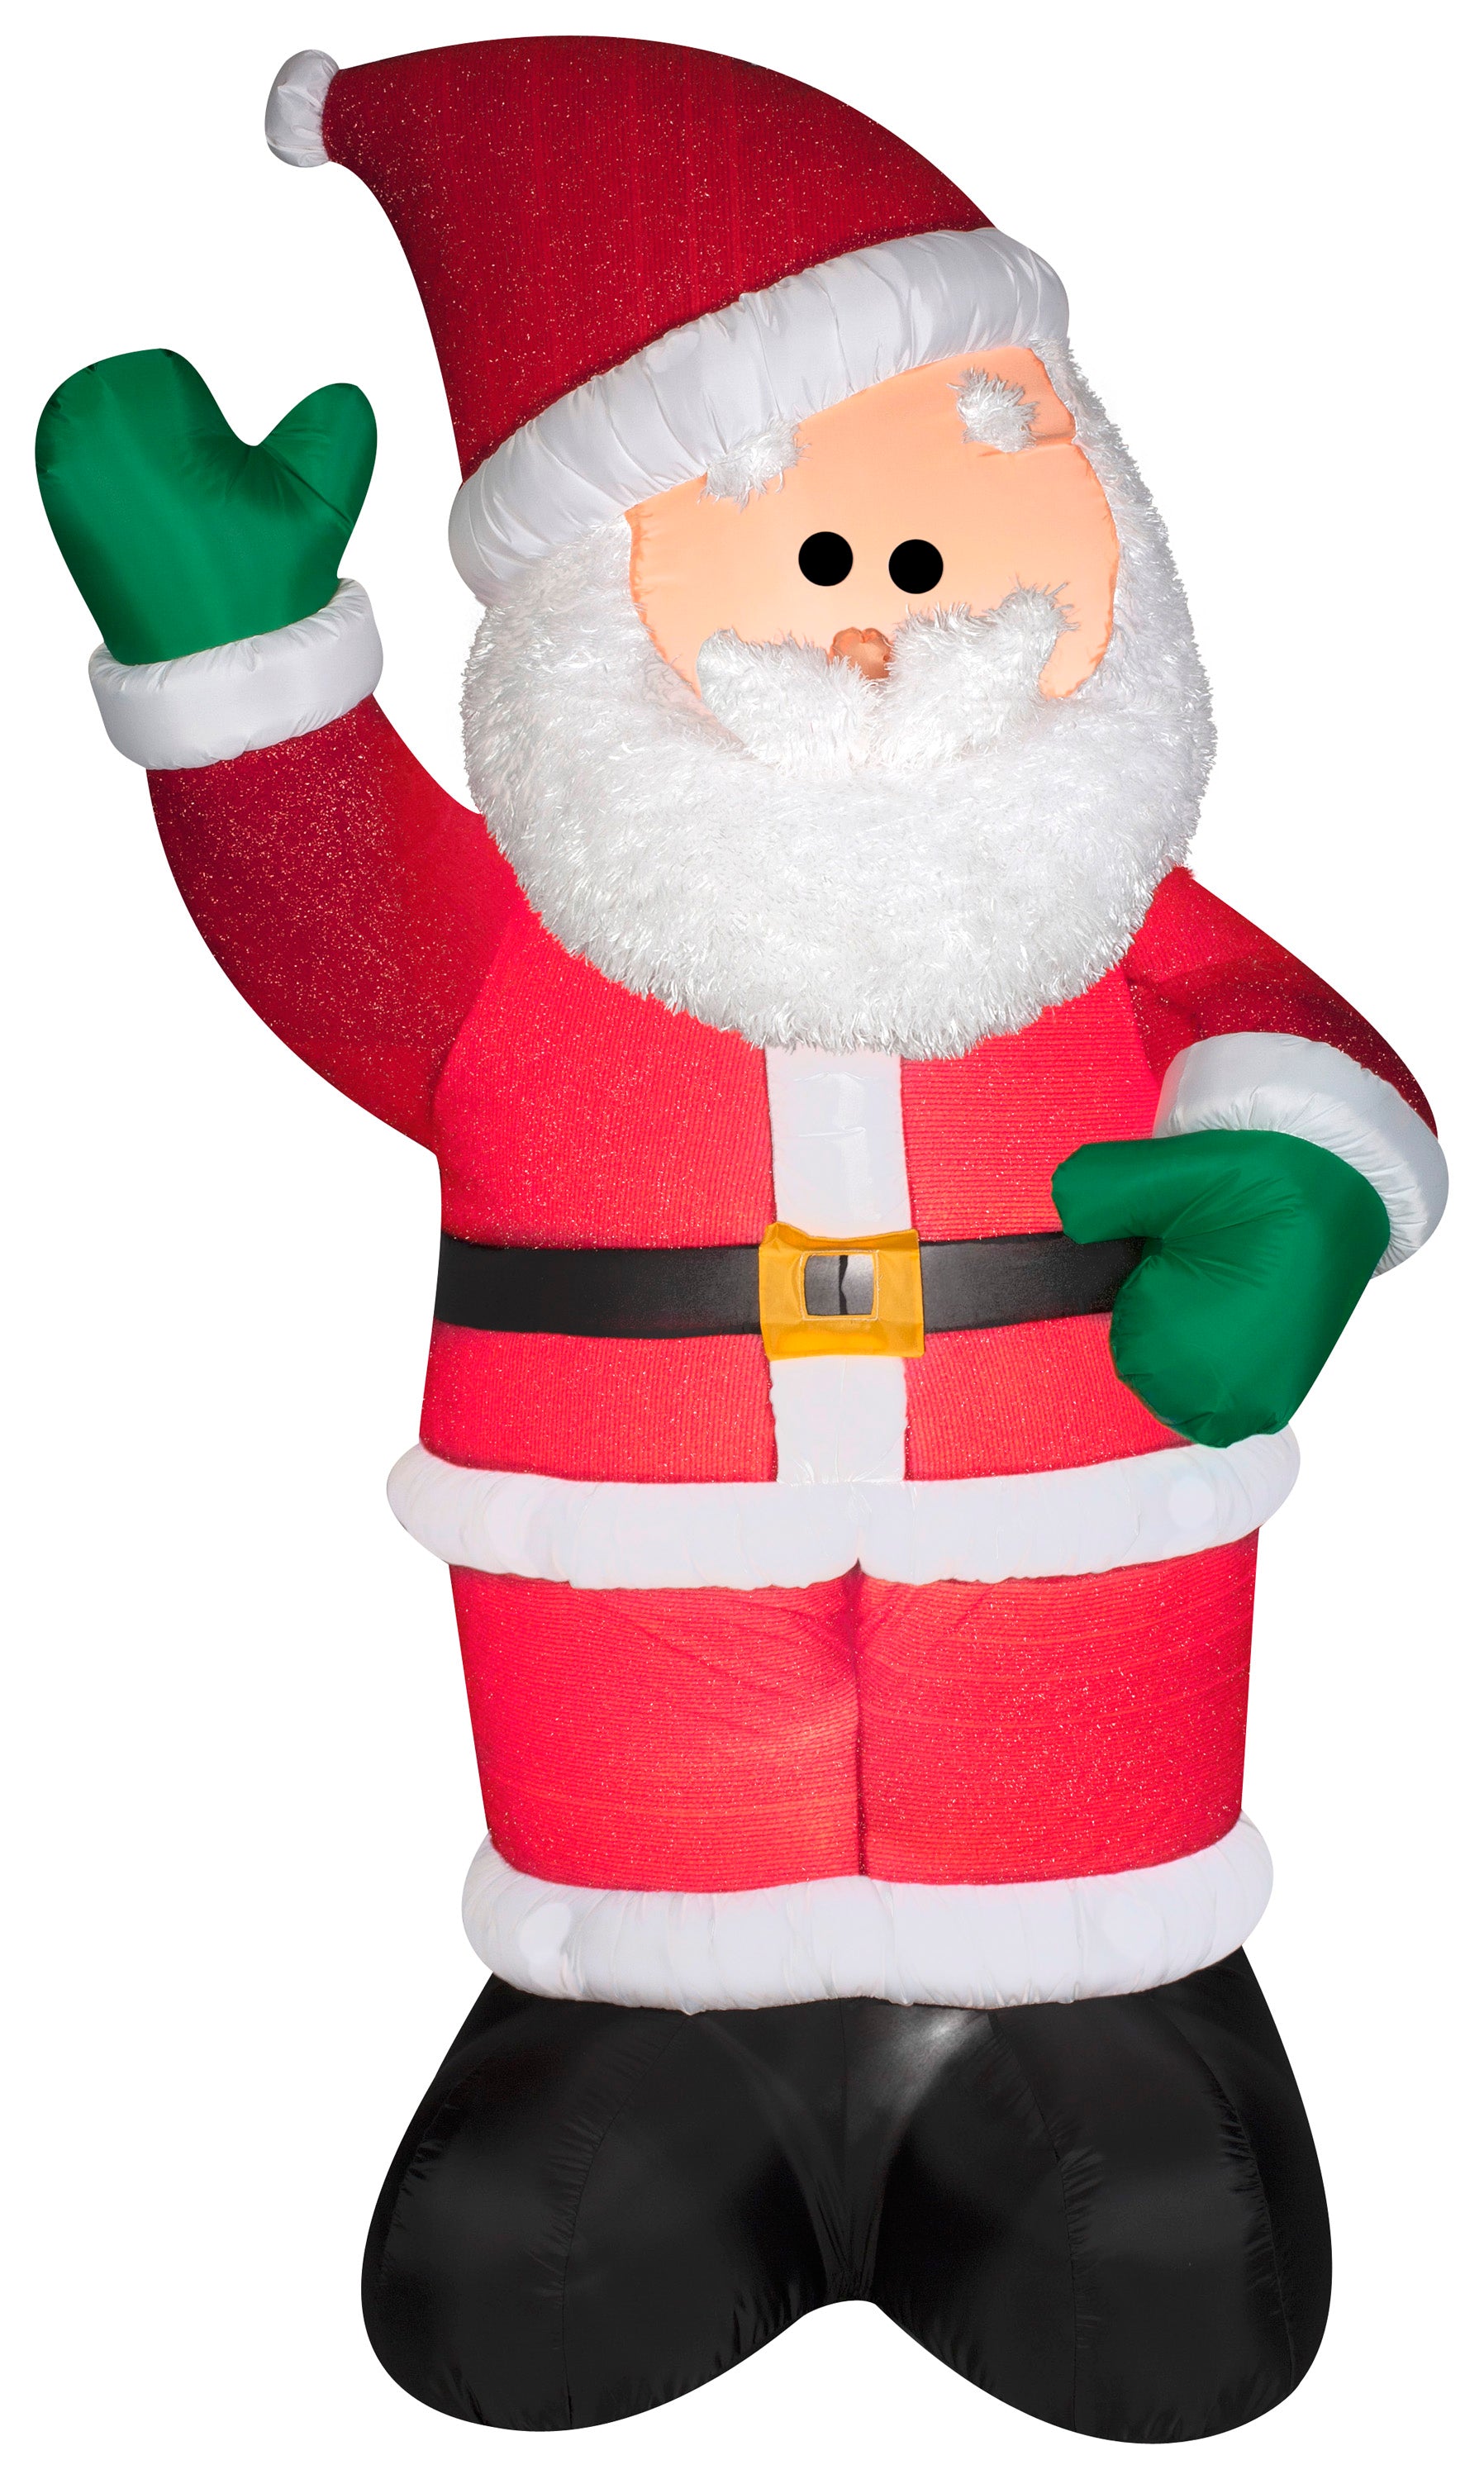 6' Airblown Mixed Media Santa Christmas Inflatable